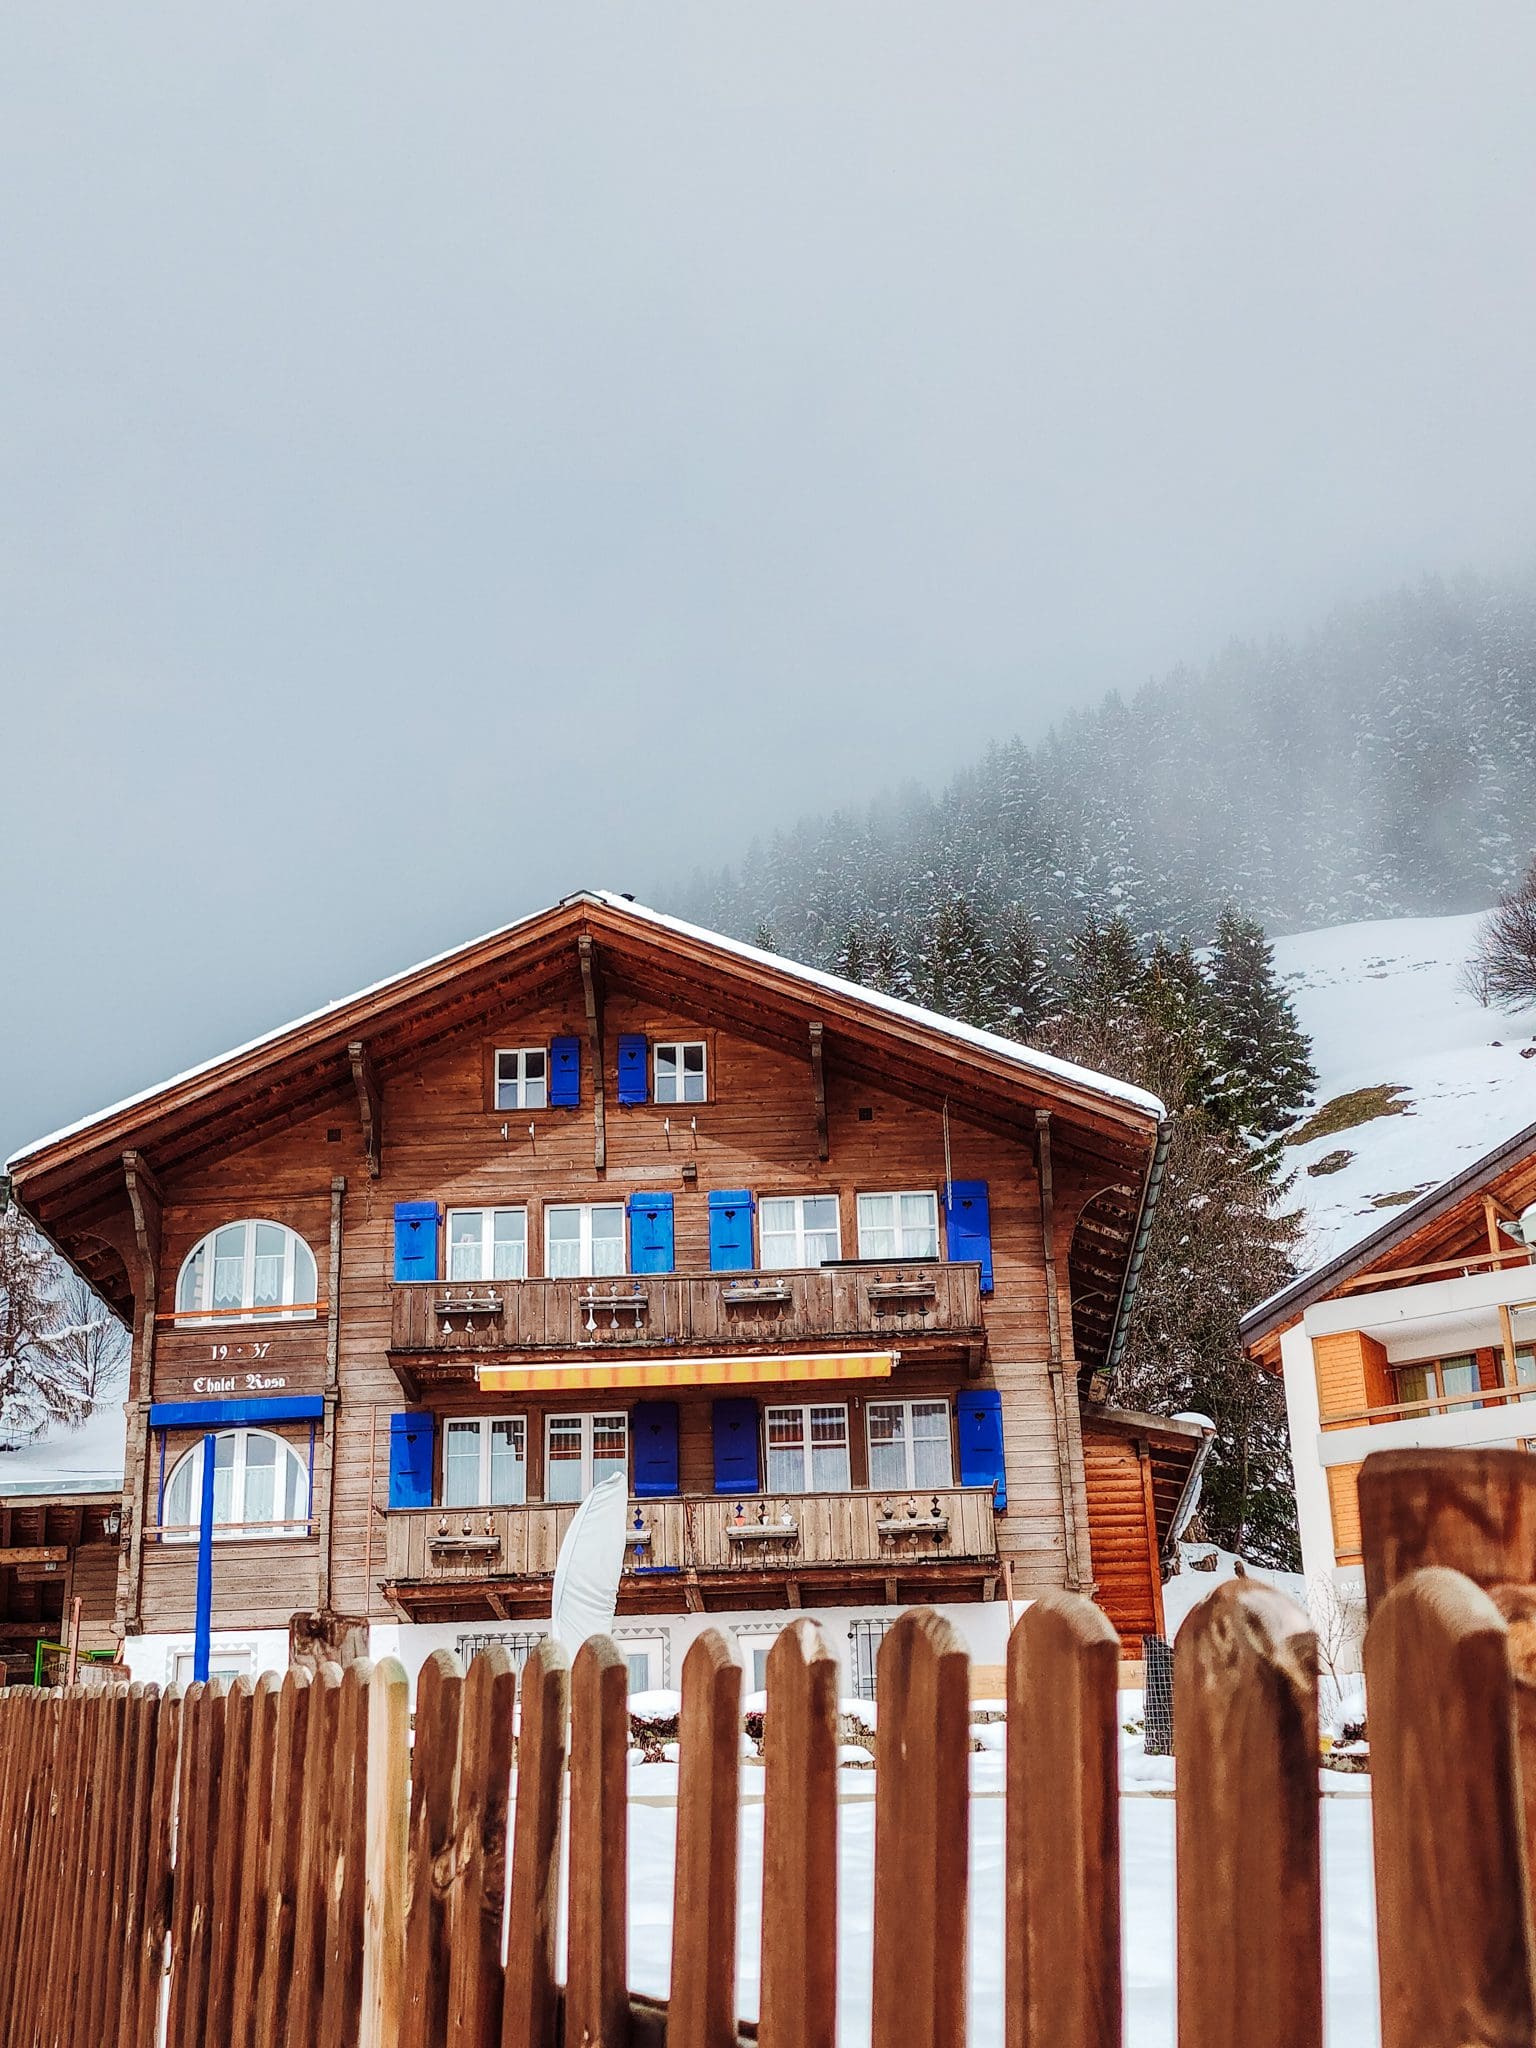 Murren is one the prettiest Swiss mountain villages